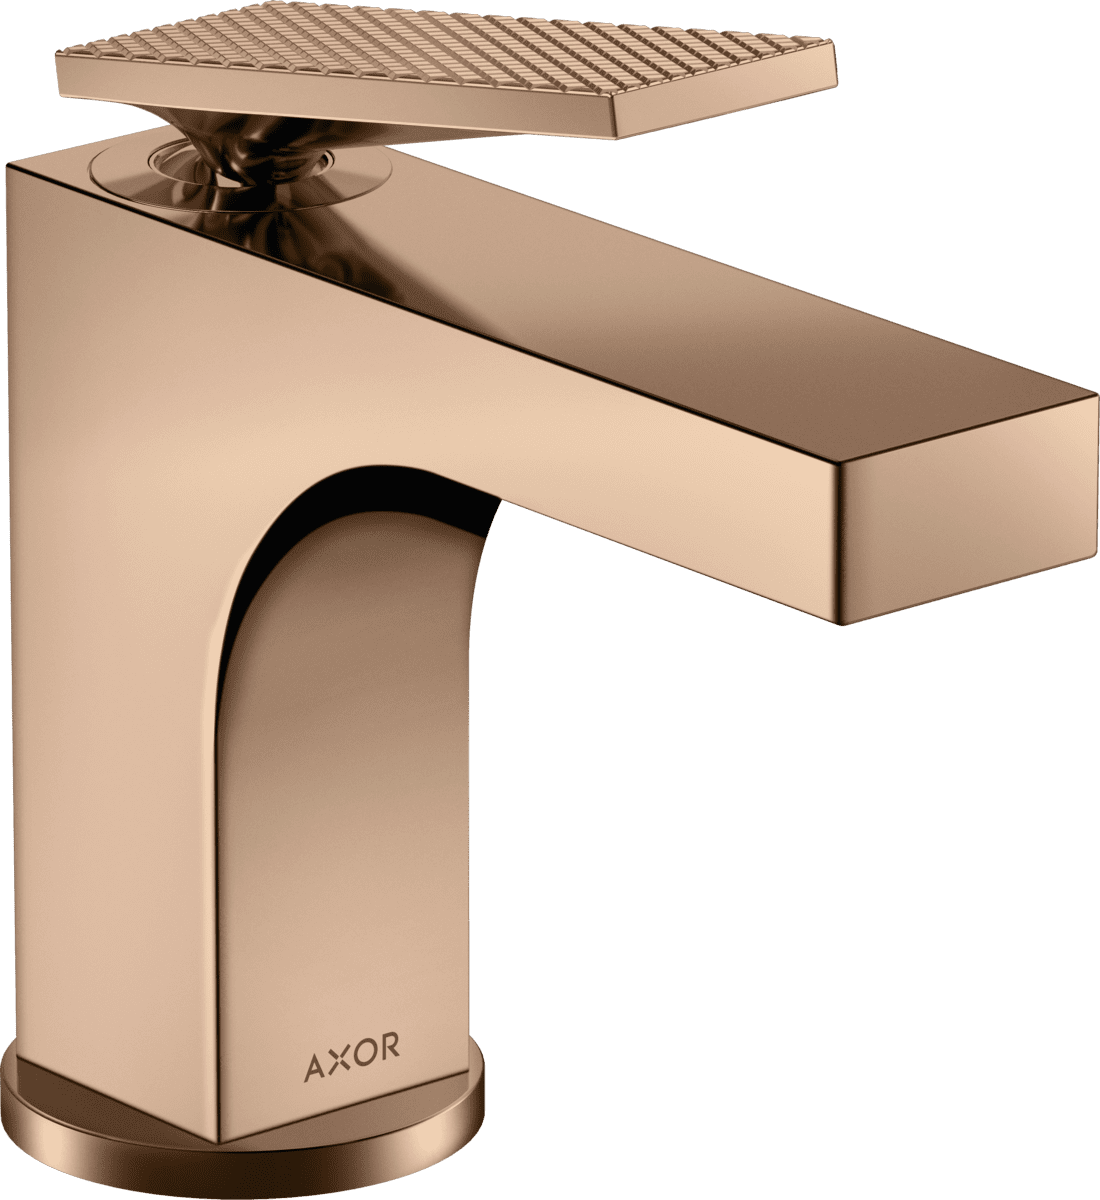 Bild von HANSGROHE AXOR Citterio Einhebel-Waschtischmischer 90 mit Hebelgriff für Handwaschbecken mit Zugstangen-Ablaufgarnitur - Rautenschliff #39001300 - Polished Red Gold